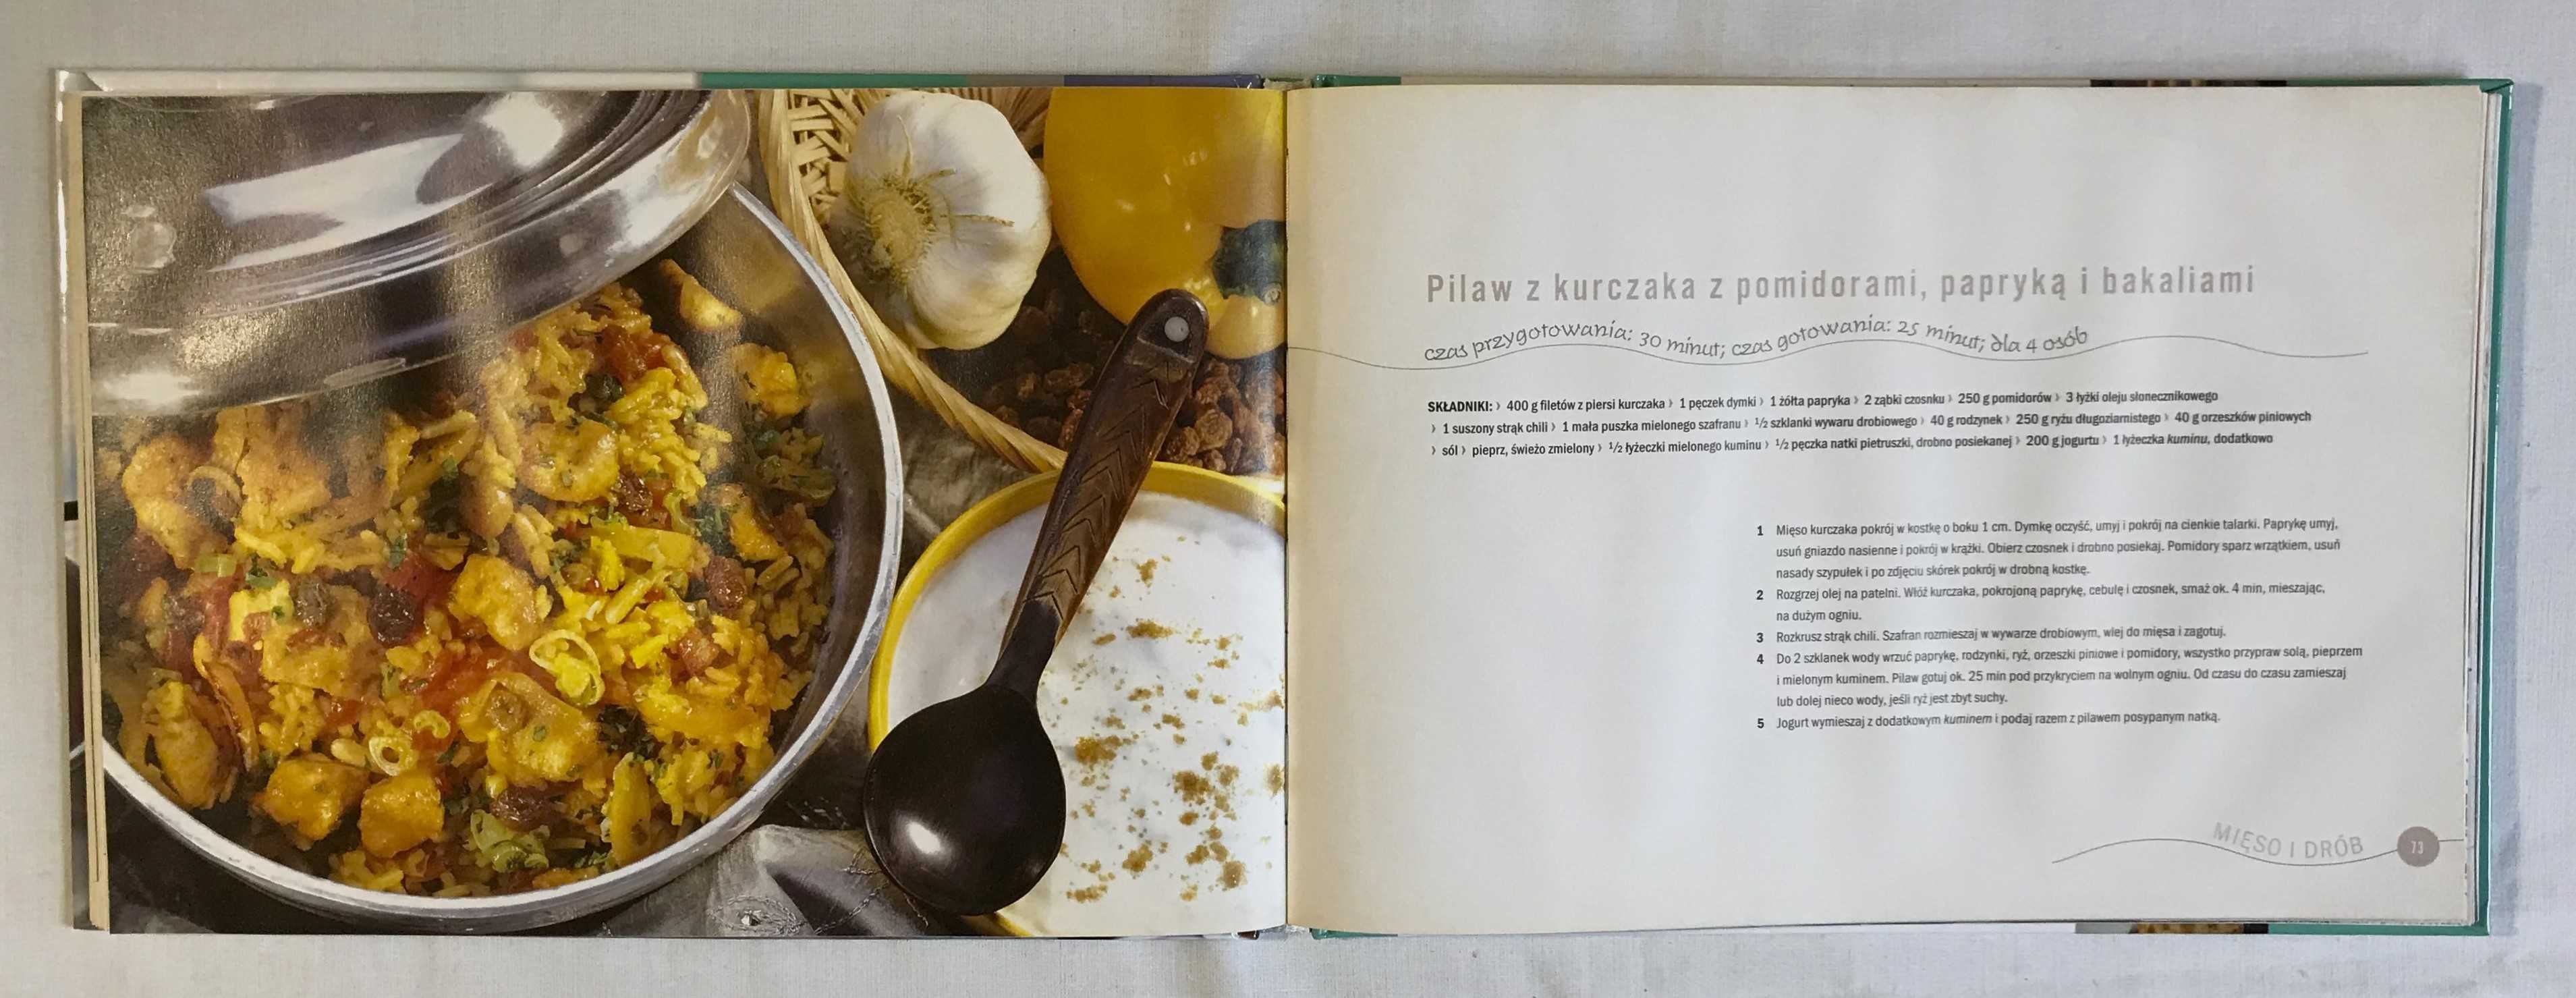 książka kucharska kuchnia turecka tradycje smaki potrawy przepisy